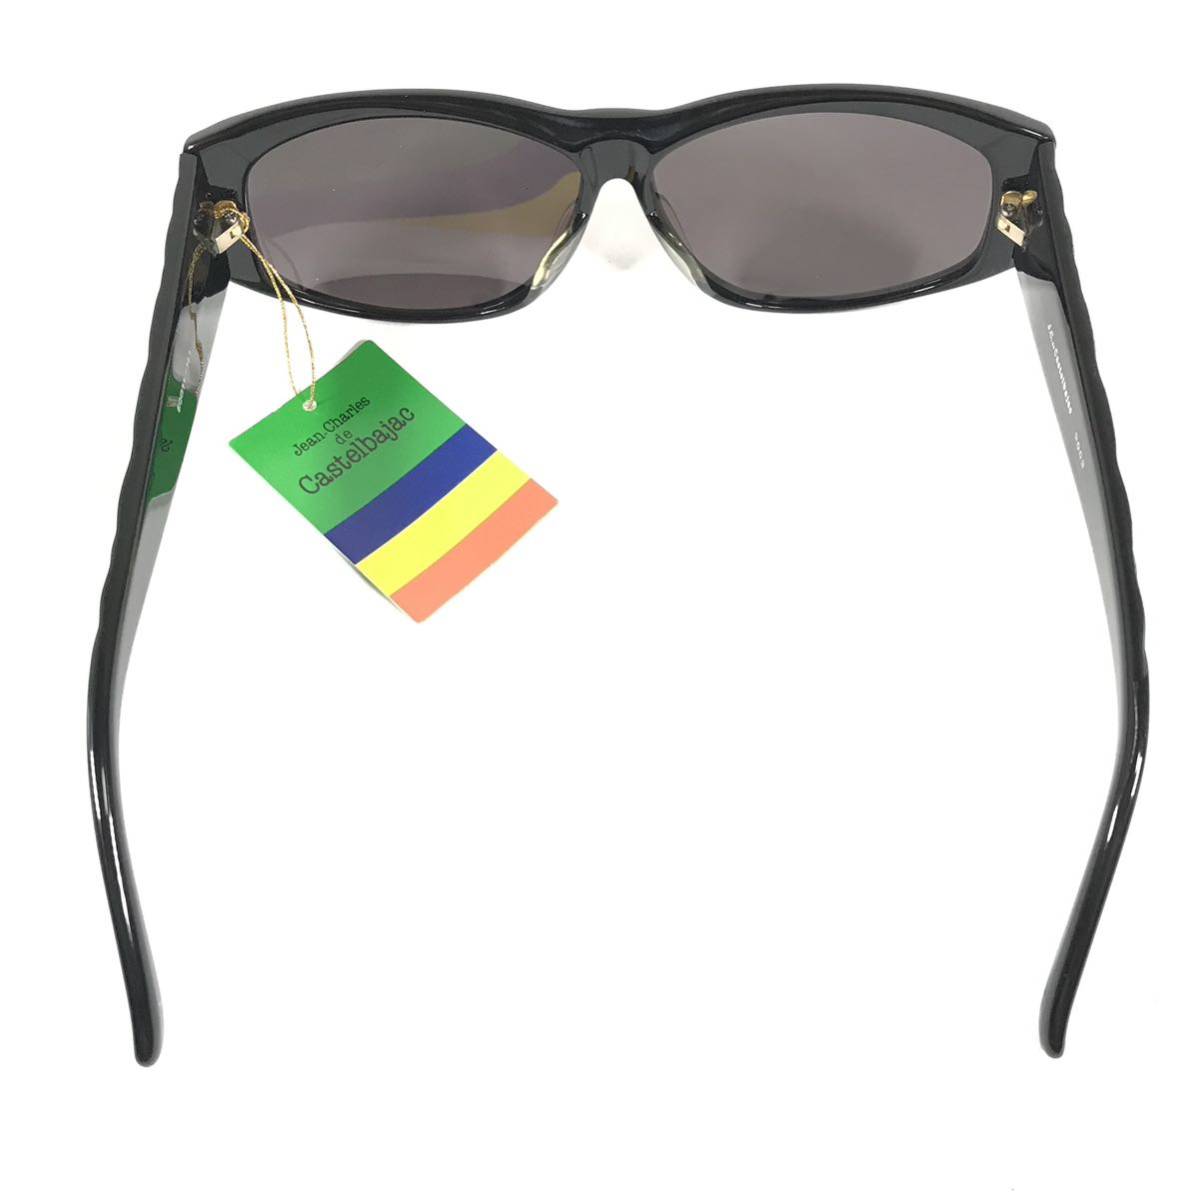  не использовался товар [ Castelbajac ] подлинный товар Castelbajac солнцезащитные очки JC Logo 9003 серый × чёрный мужской женский обычная цена 2.8 десять тысяч иен стоимость доставки 520 иен 88